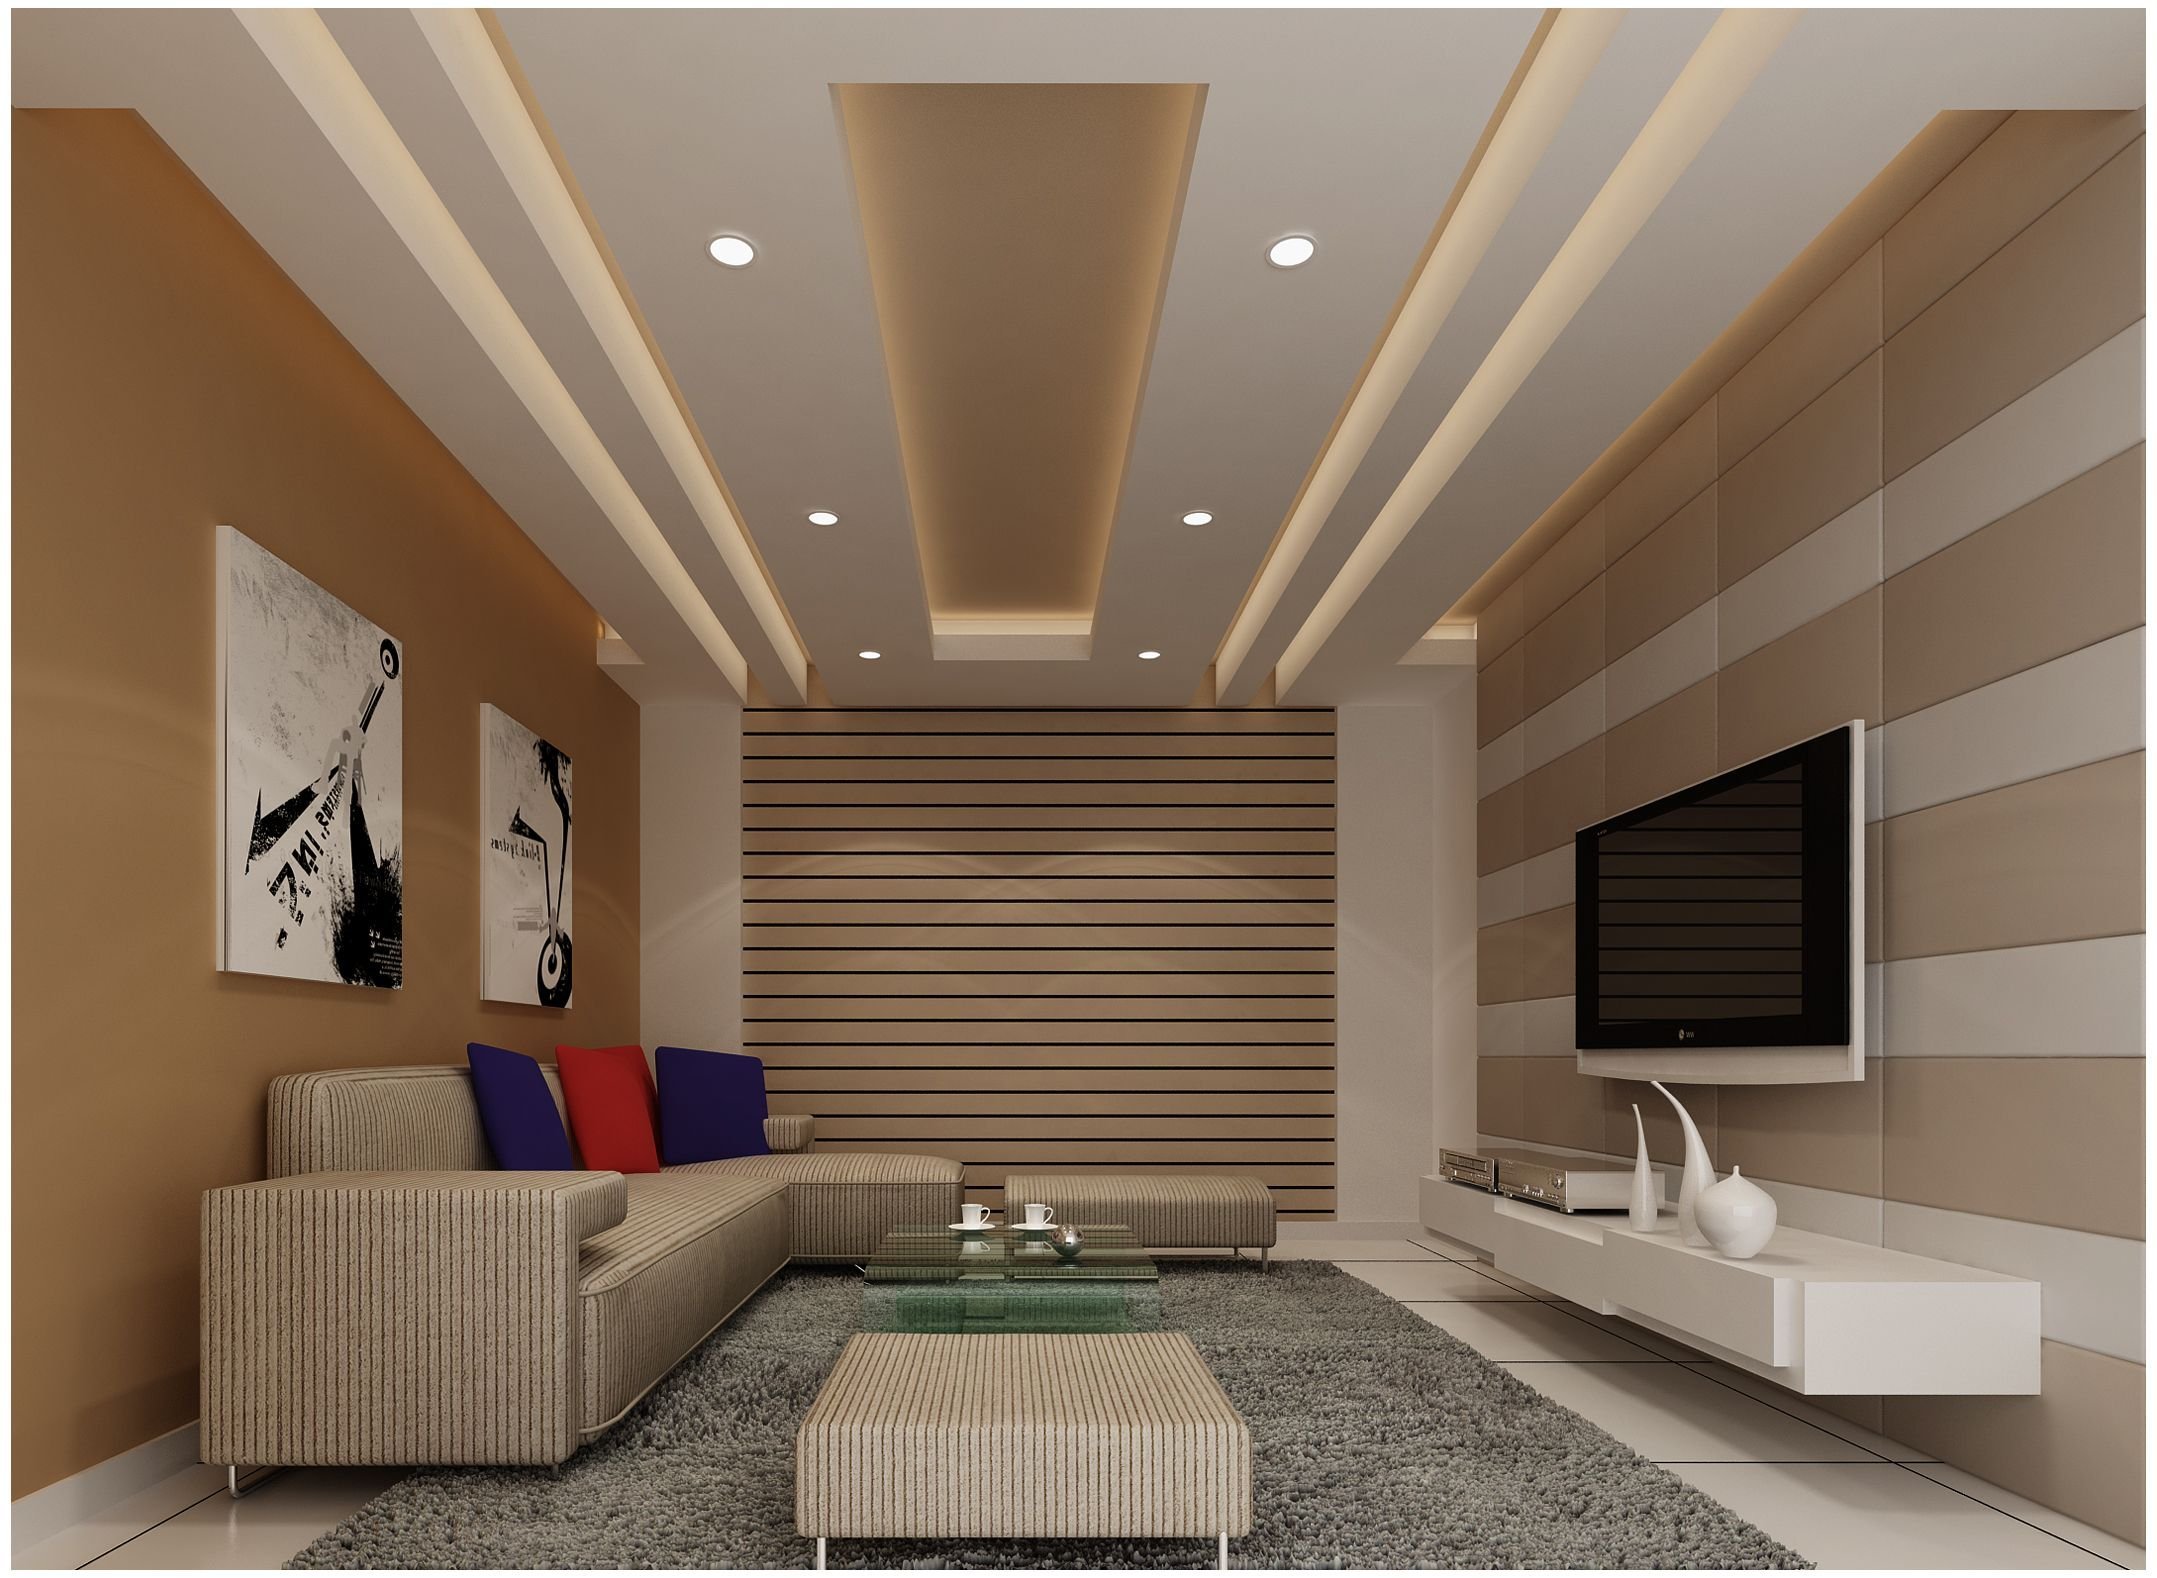 Потолок в гостиной - современные идеи и лучшие решения по выбору и применению различных видов потолков и потолочных конструкций (175 фото)